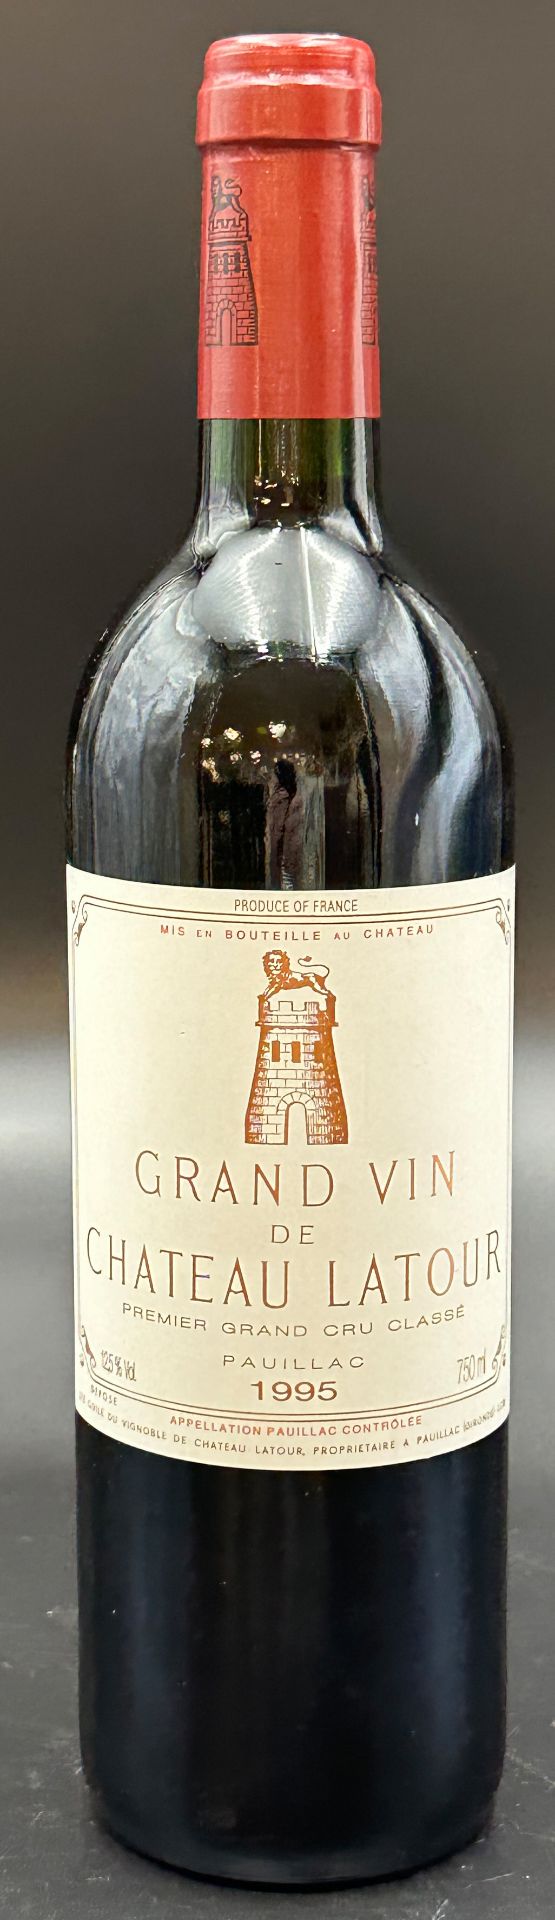 1 bottle of red wine. Bordeaux. Grand Vin de Château Latour. Pauillac. 1995. France